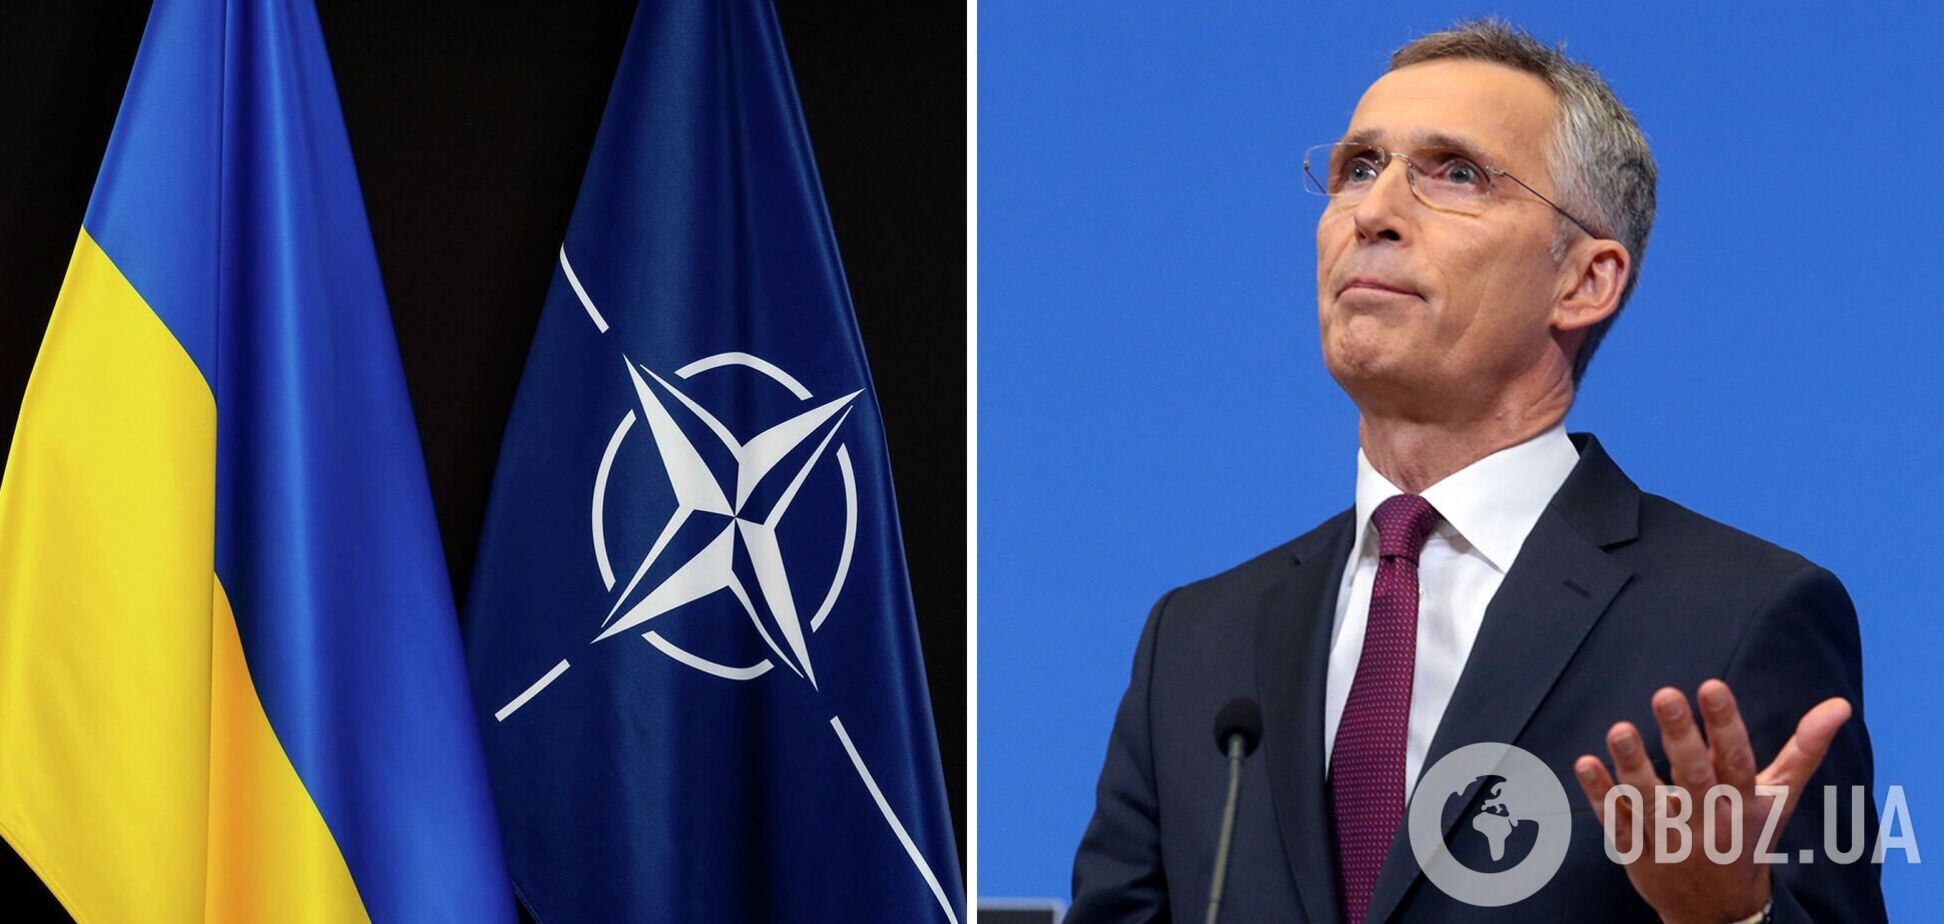 Саме по собі пересування російських військ не підтверджує їхнє виведення, заявили в НАТО